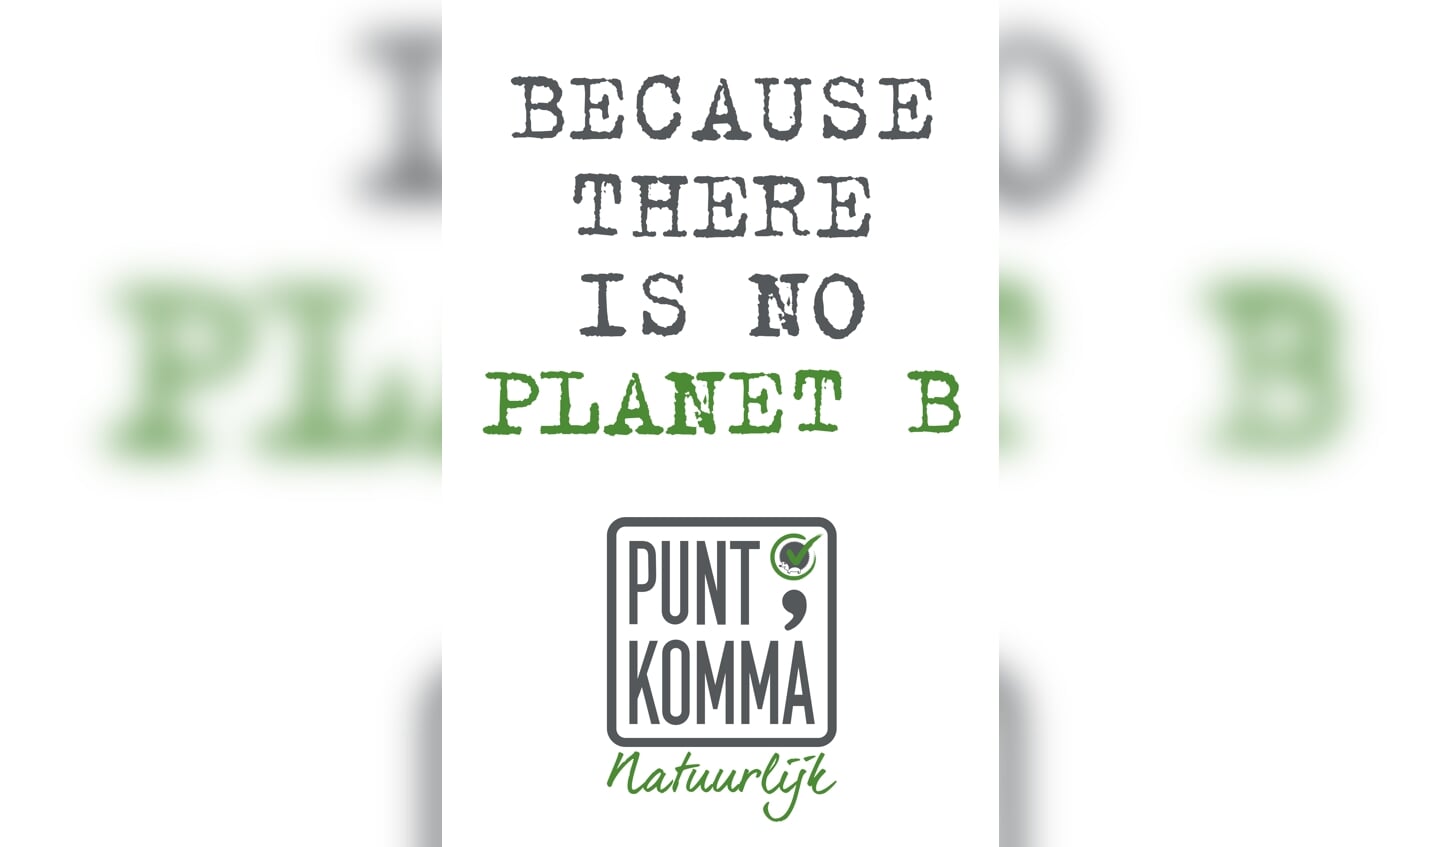 Nieuwe logo PuntKomma